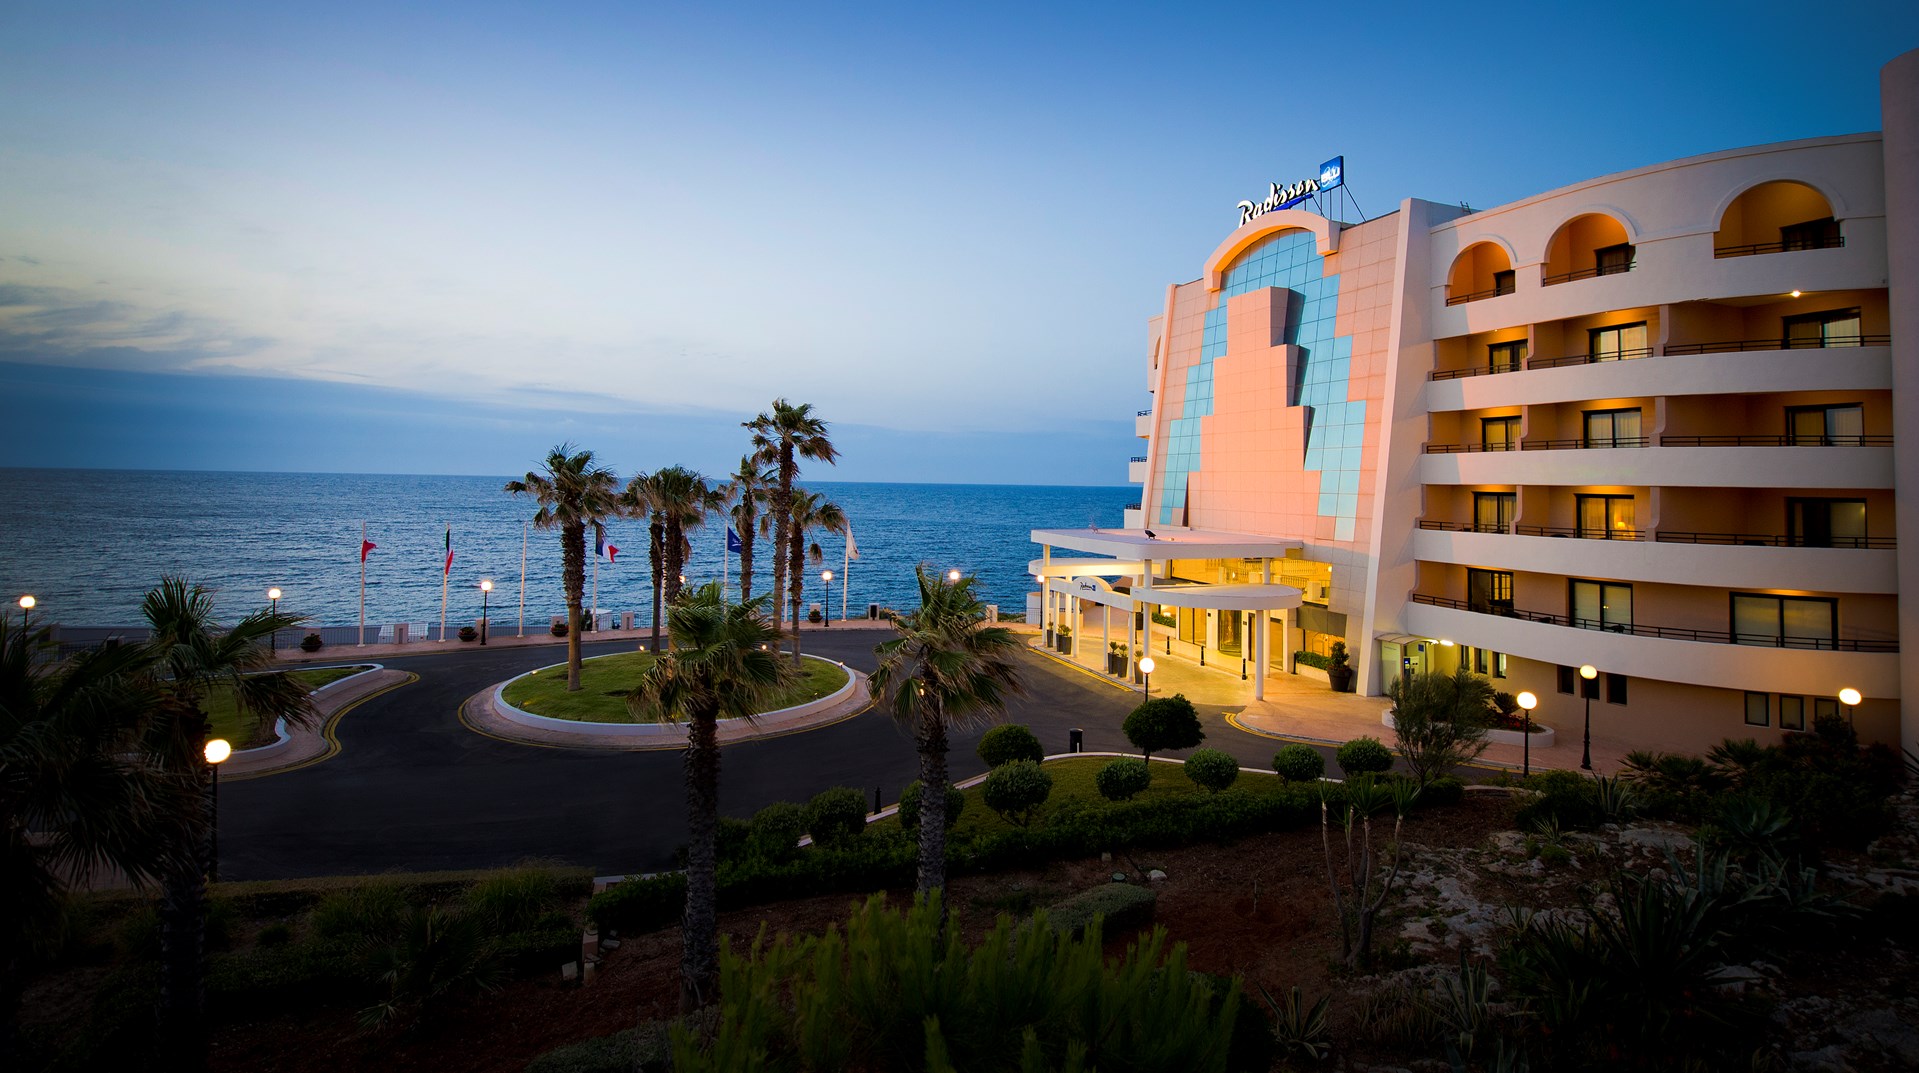 What a view! De azuurblauwe schoonheid van de Middellandse Zee lacht je toe Radisson Blu Resort St Julians 